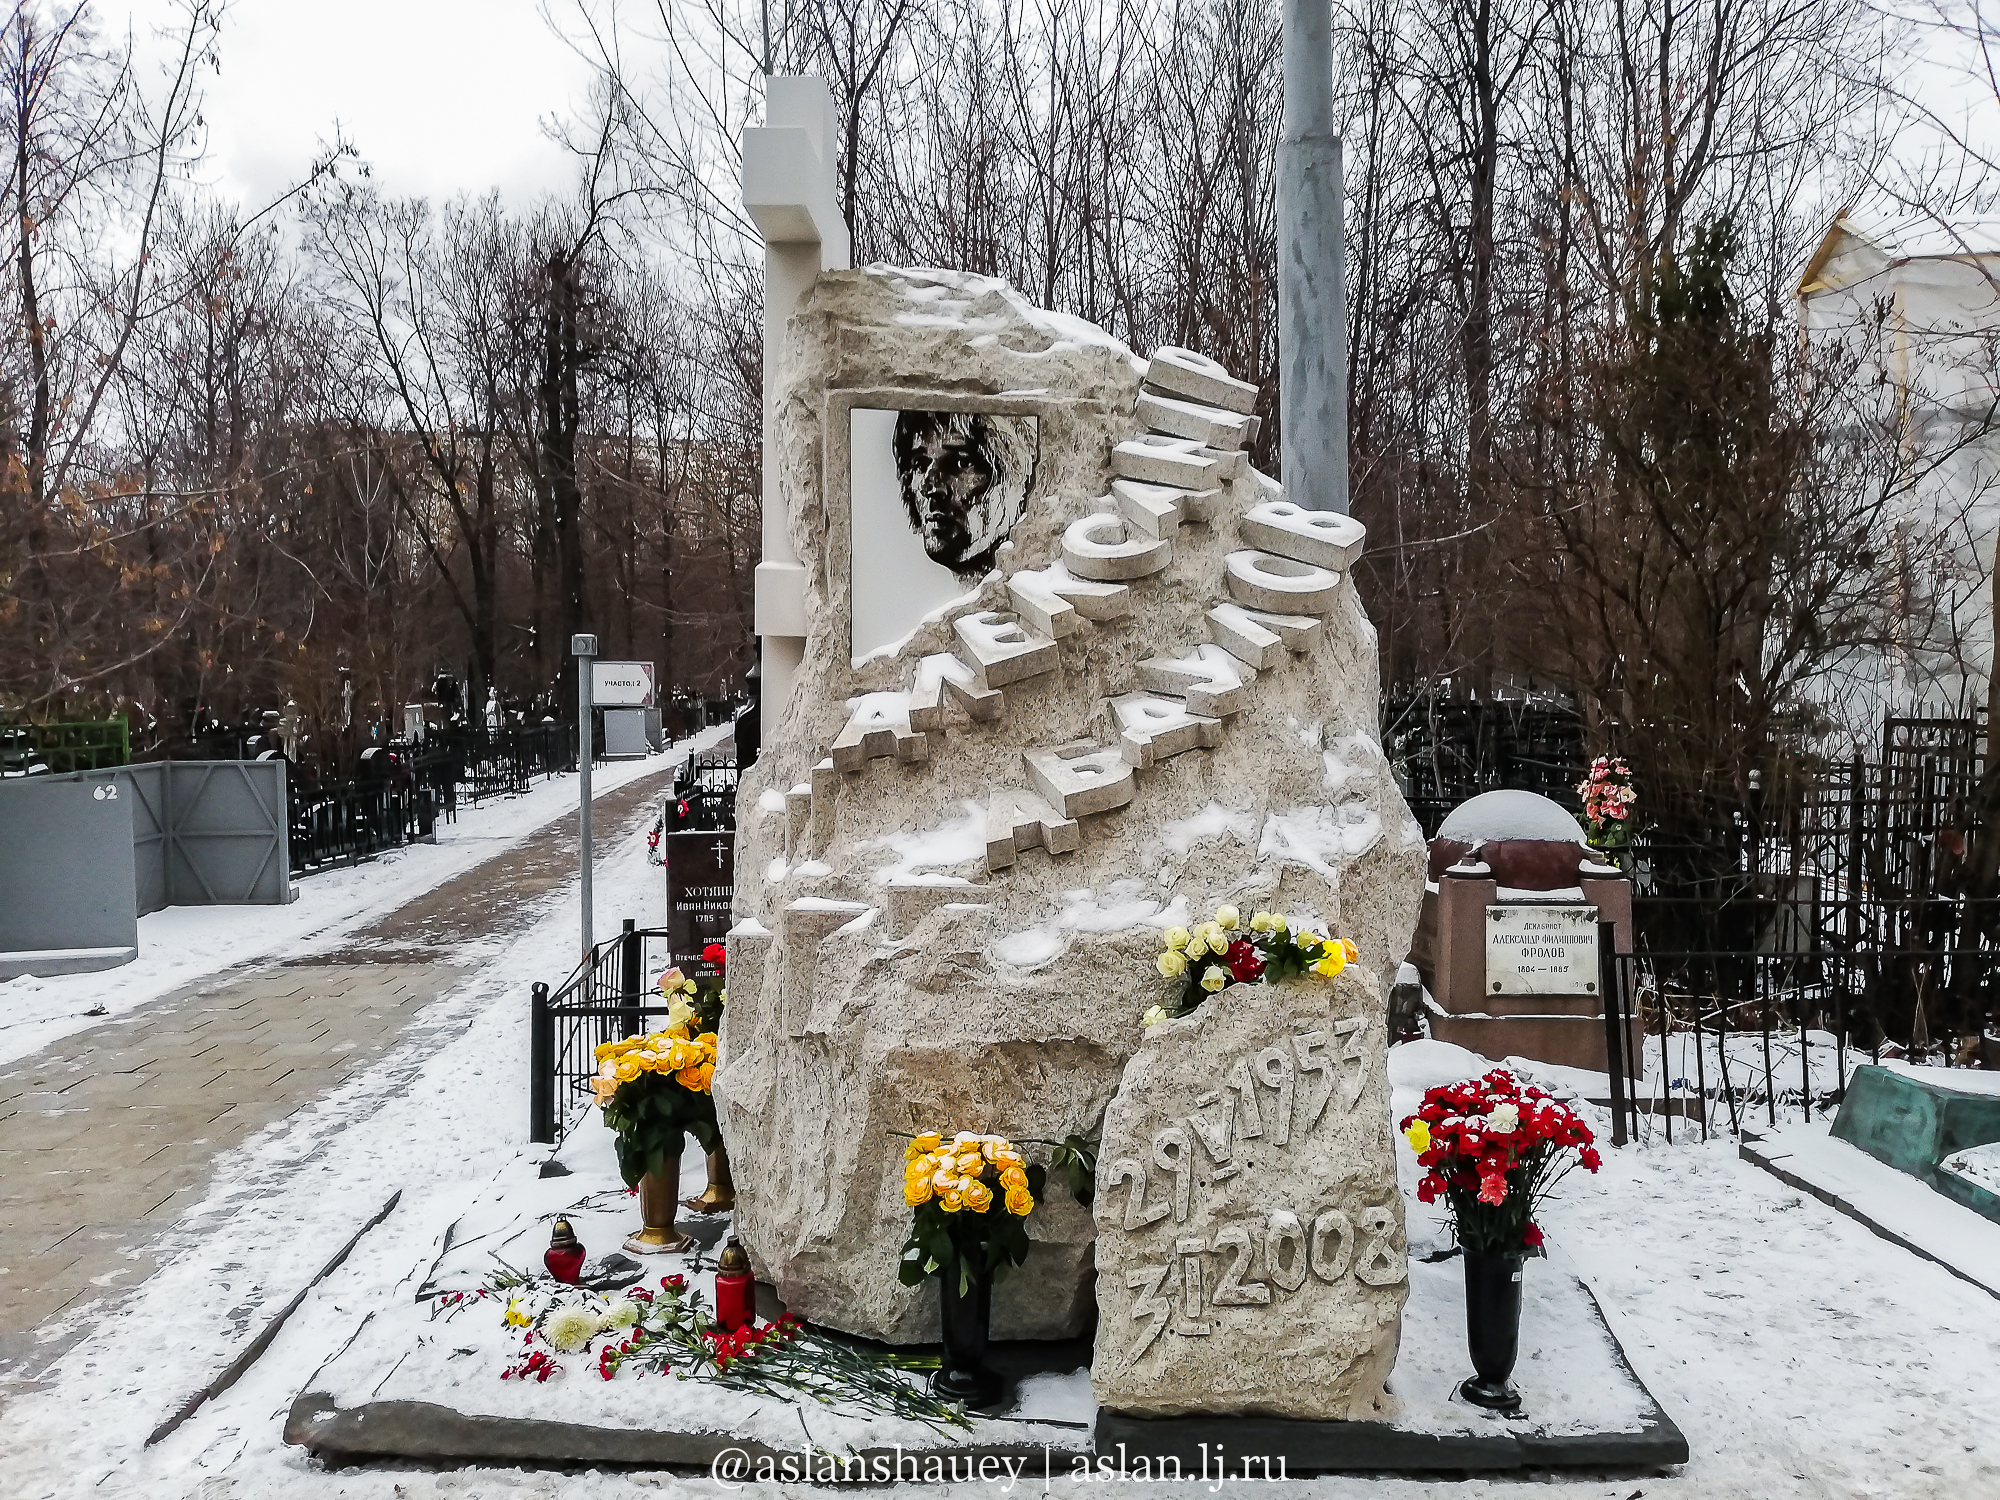 Фото могил известных людей на ваганьковском кладбище